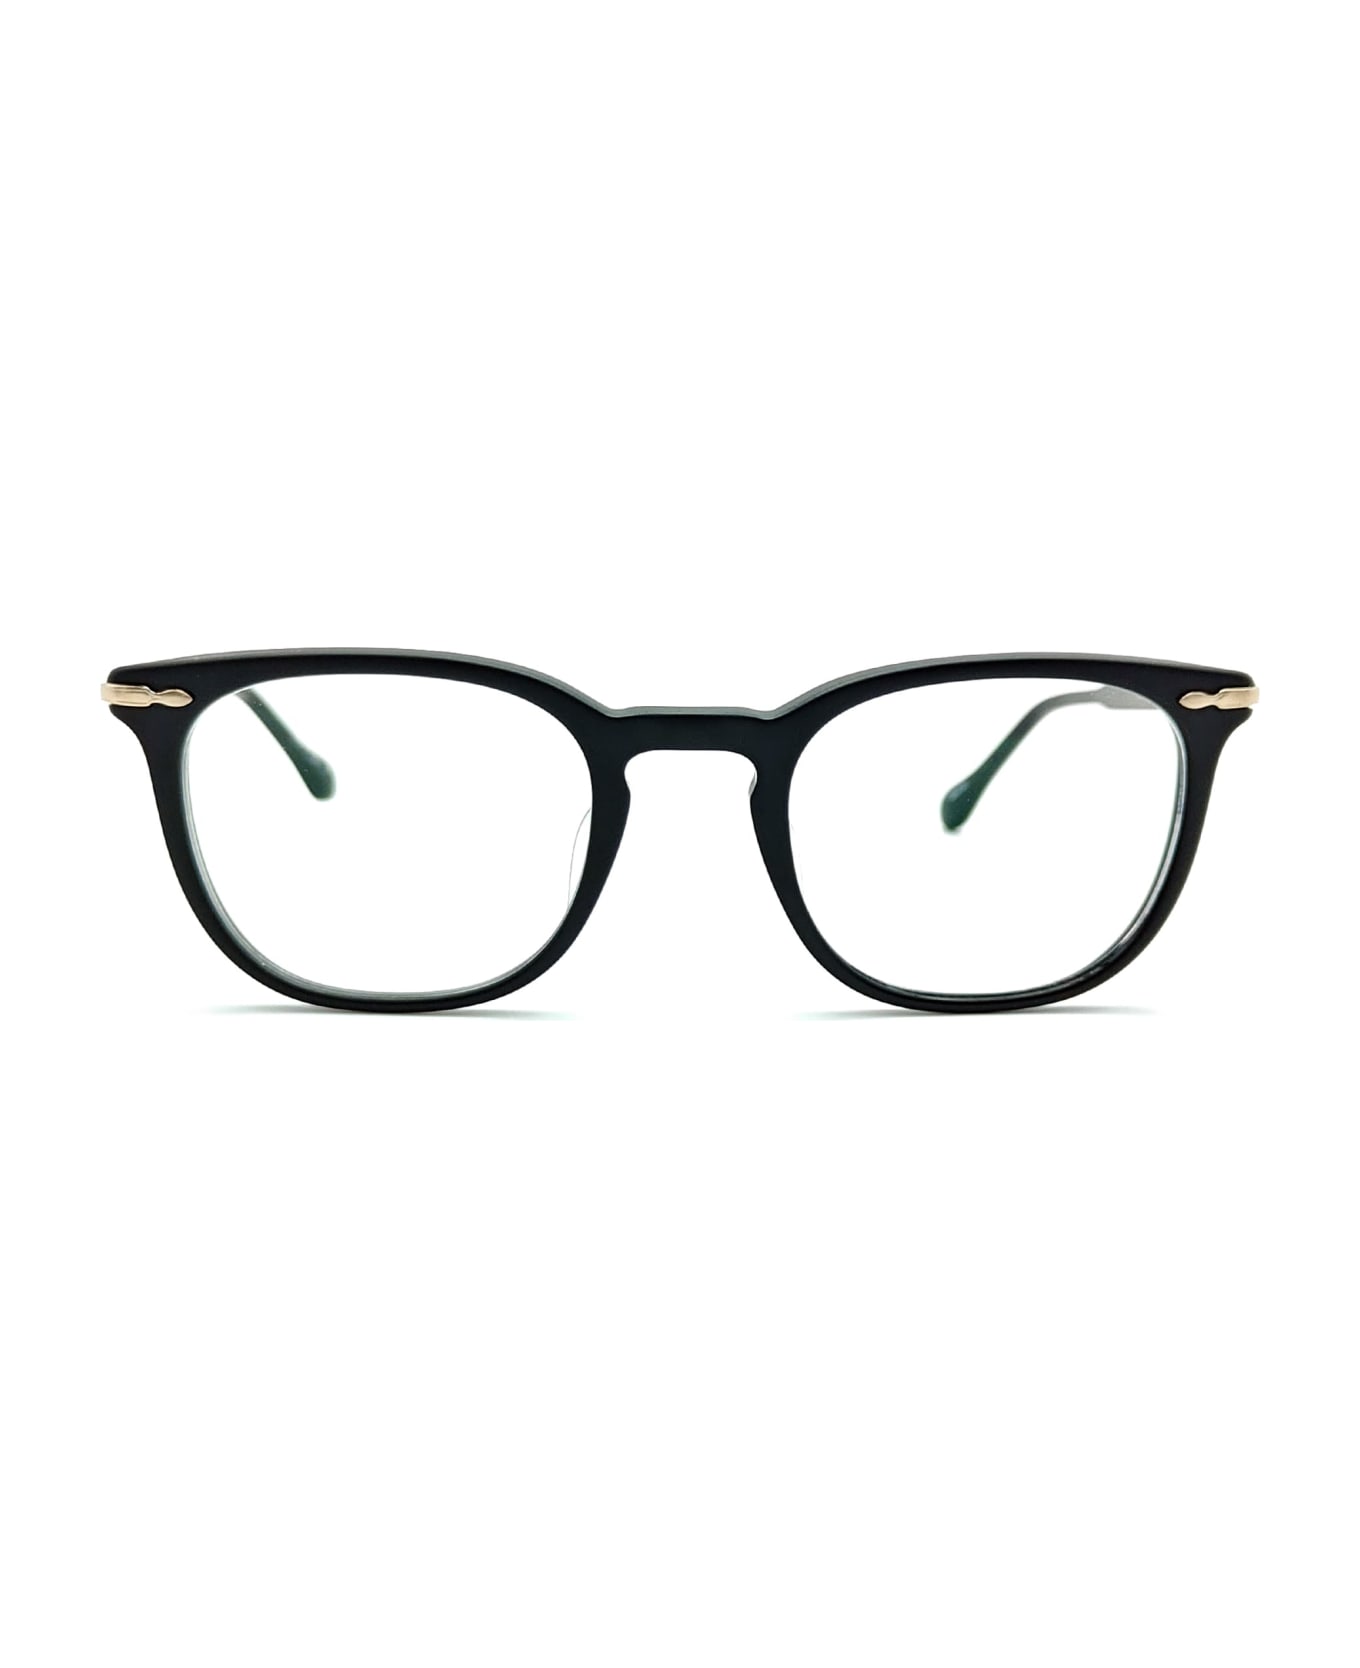 Matsuda M2047 - Matte Black / Brushed Gold Rx Glasses - Matte black